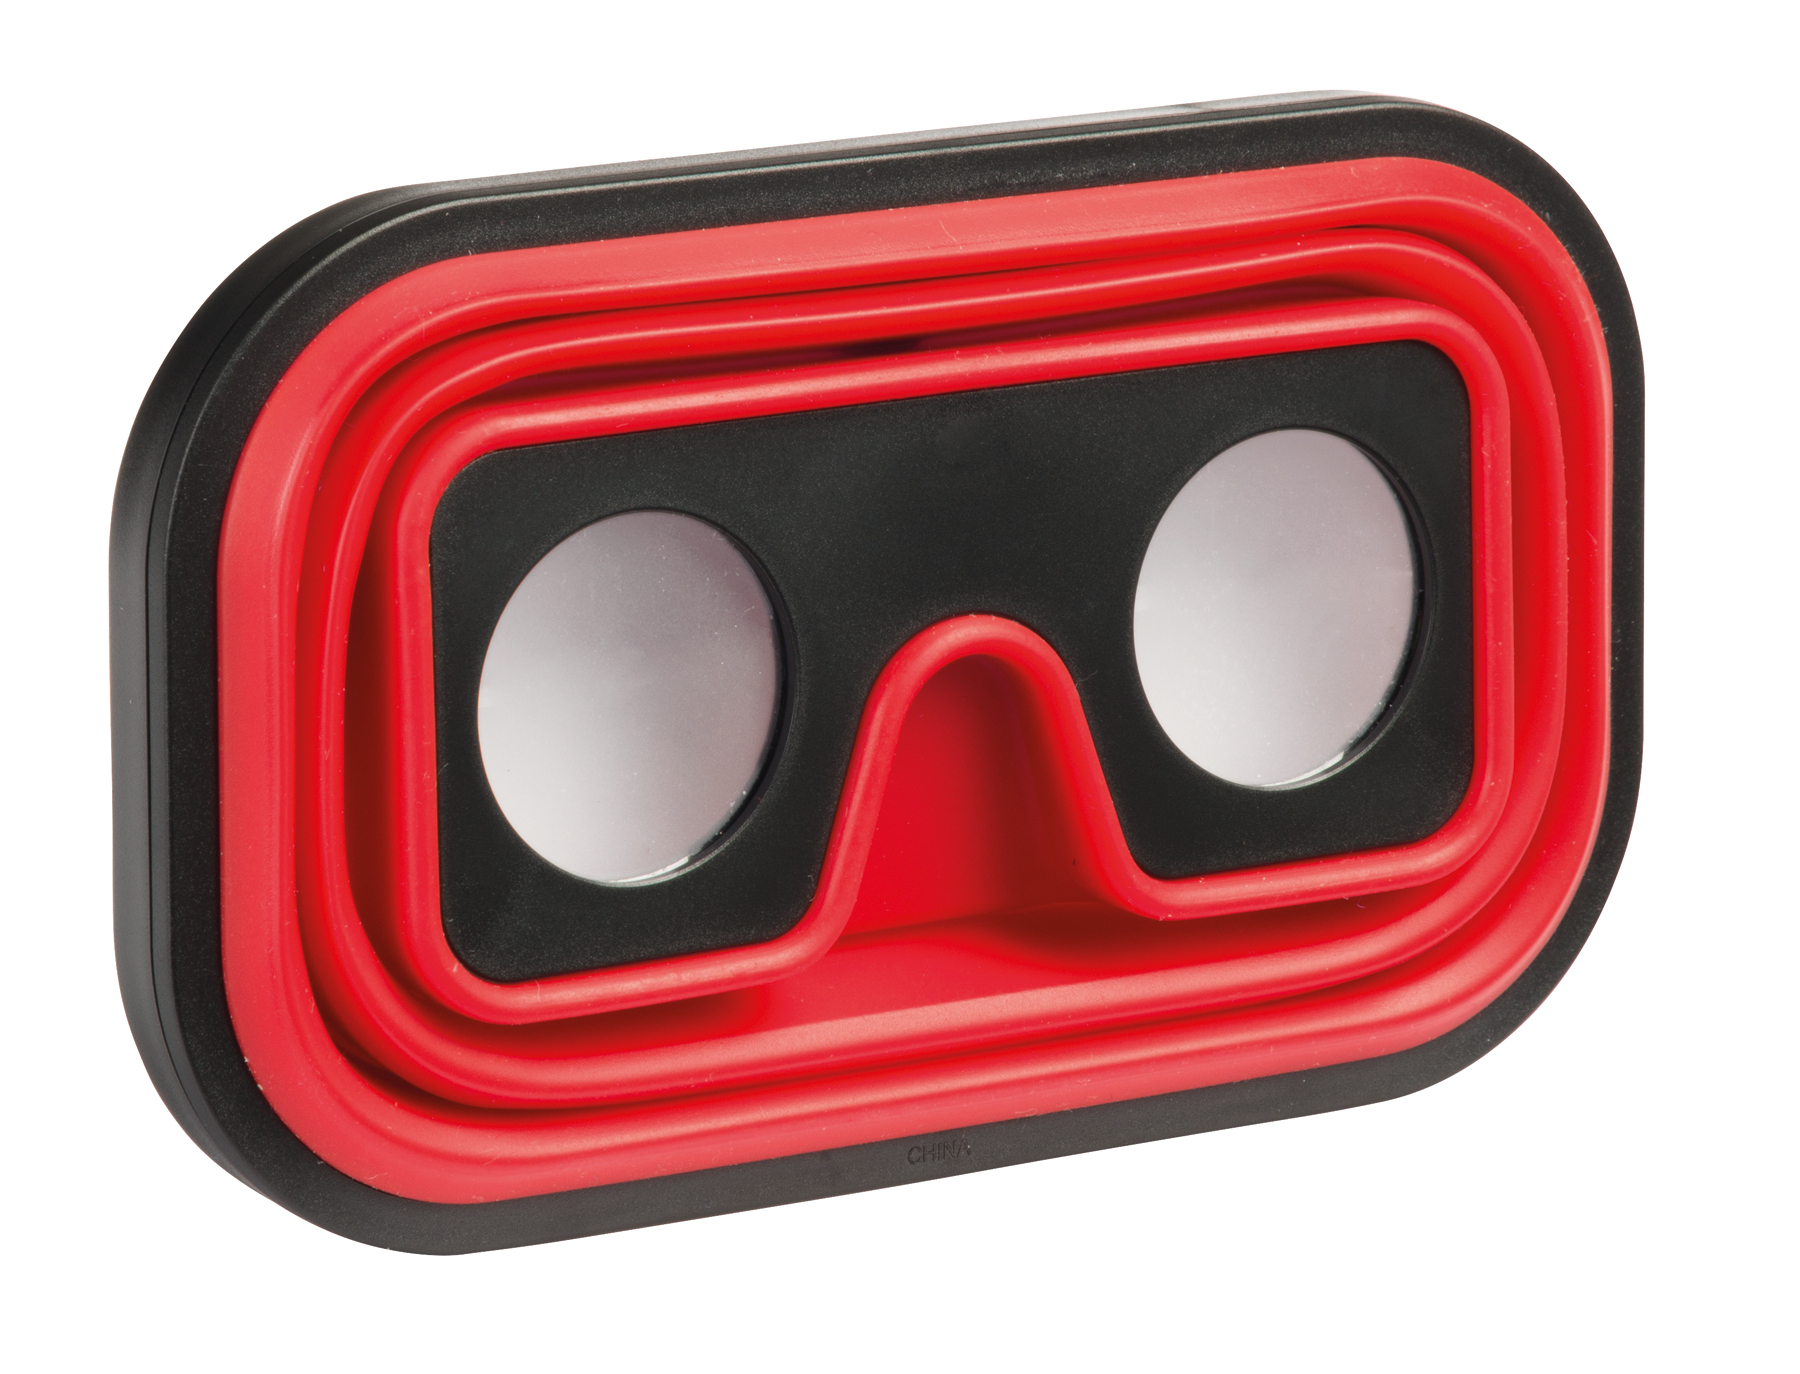 Okulary wirtualnej rzeczywistości IMAGINATION FLEX, czarny, czerwony